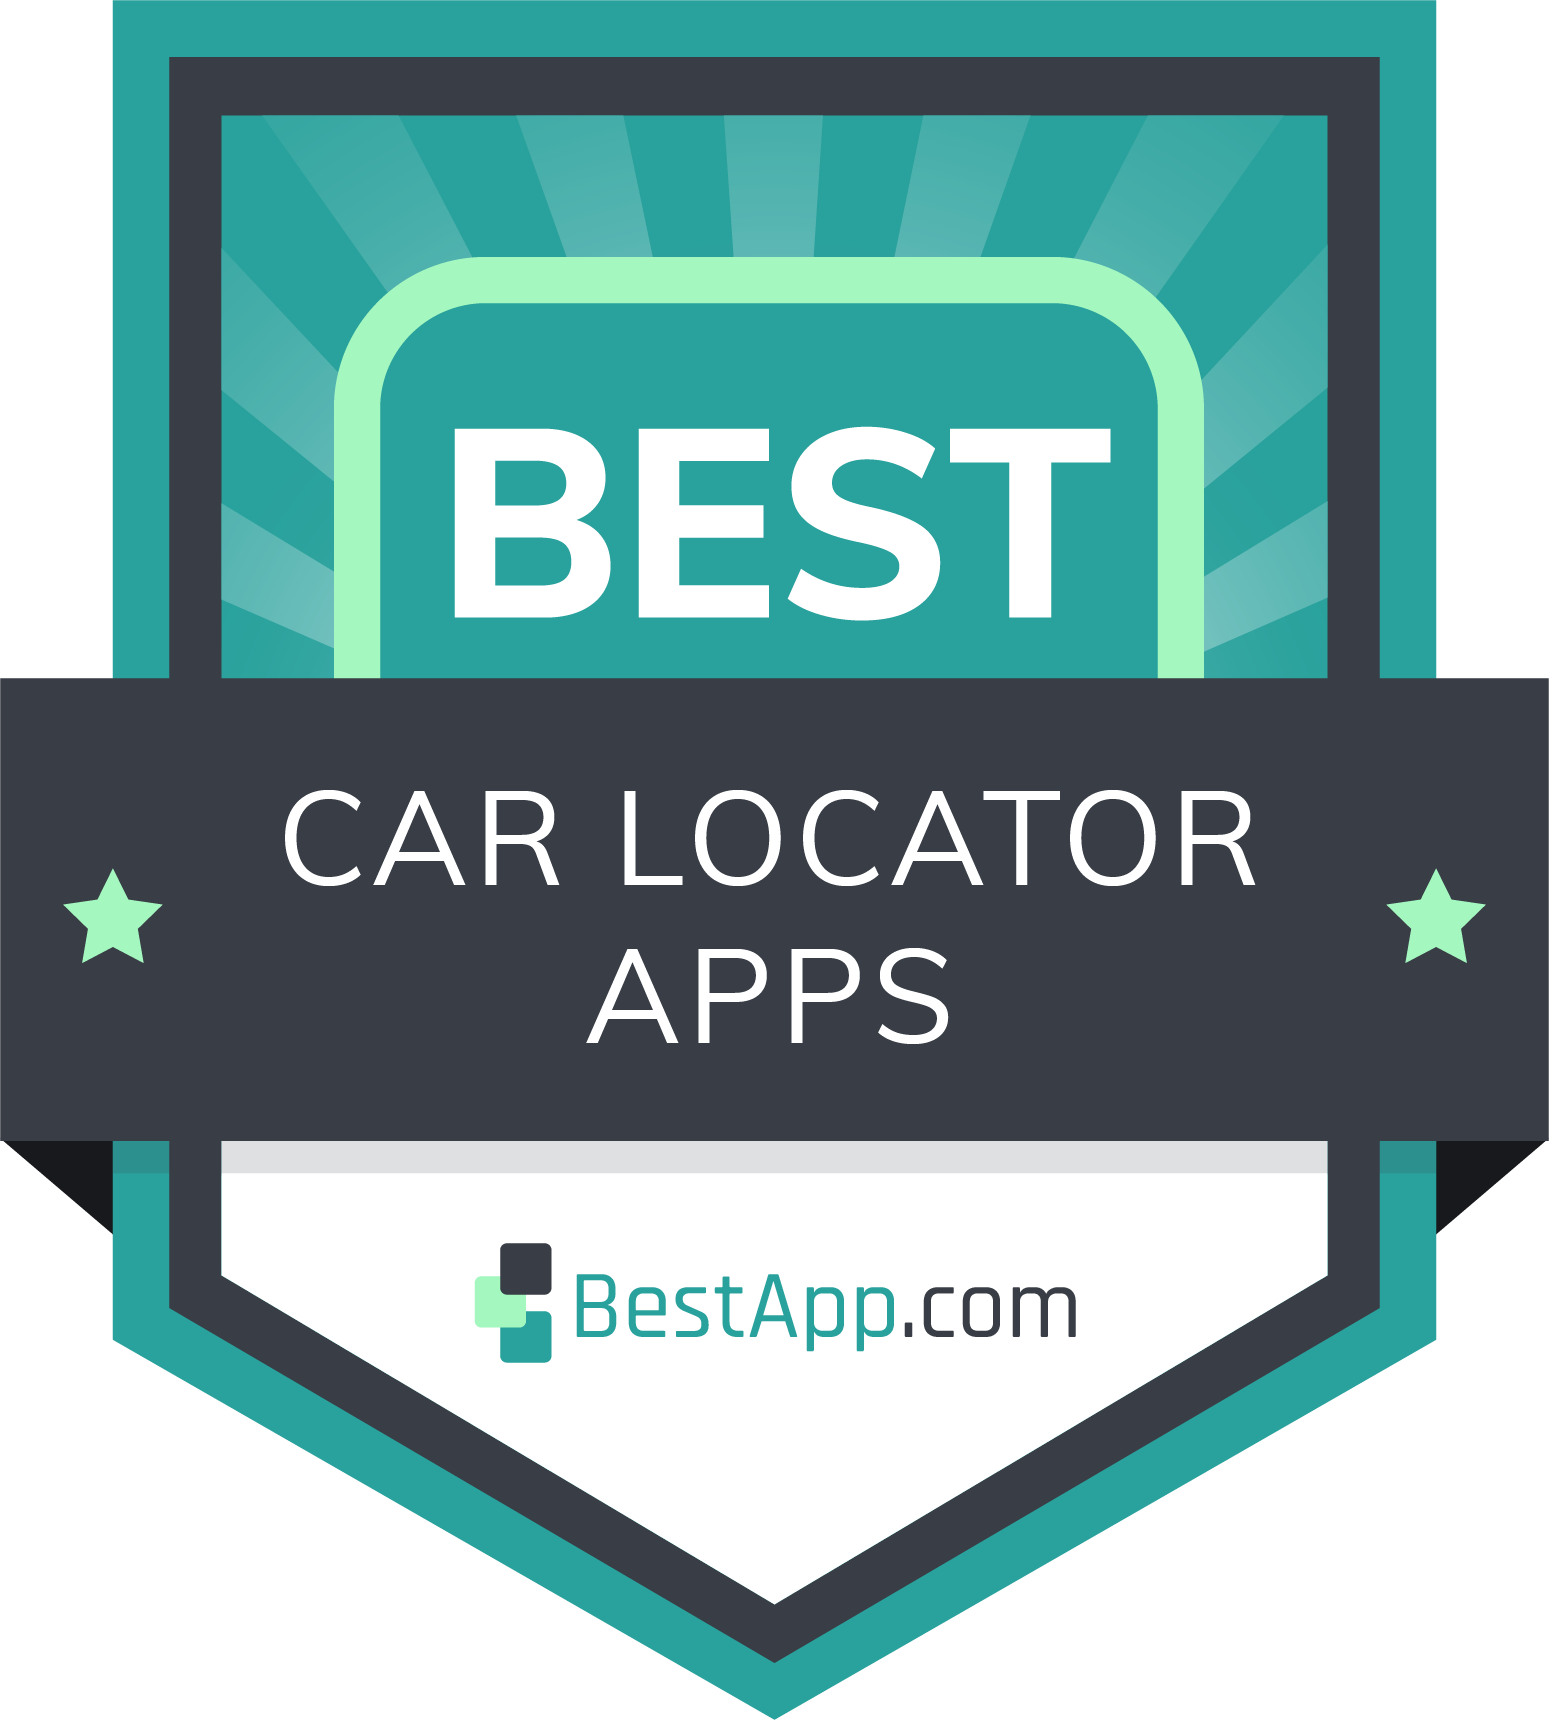 Best Car Locator Apps Badge